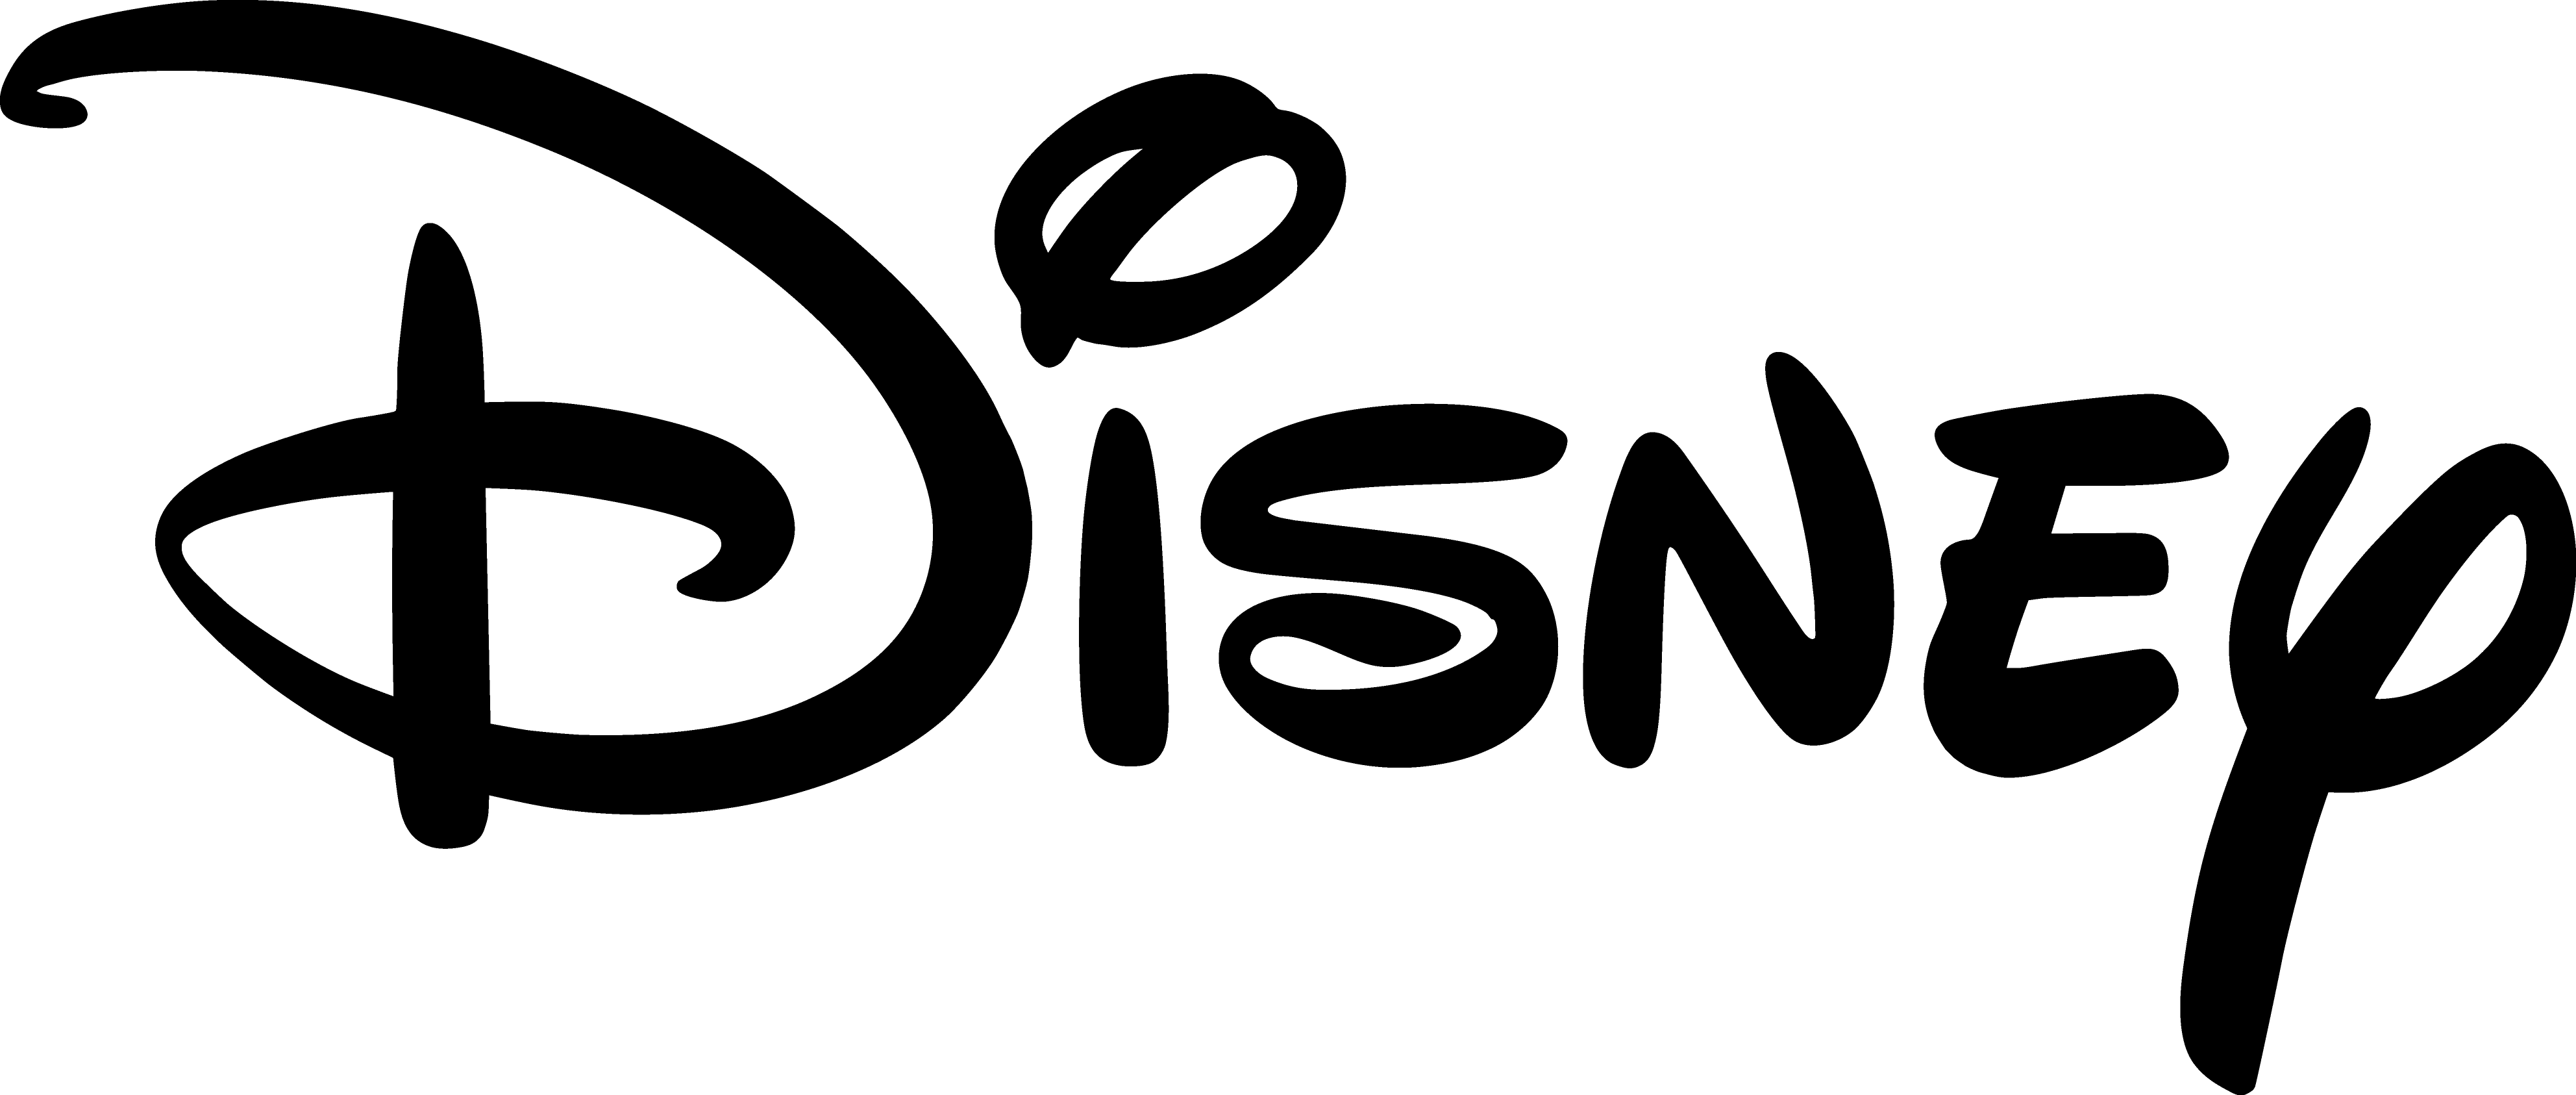 Diney Logo - Walt Disney logo PNG images free download